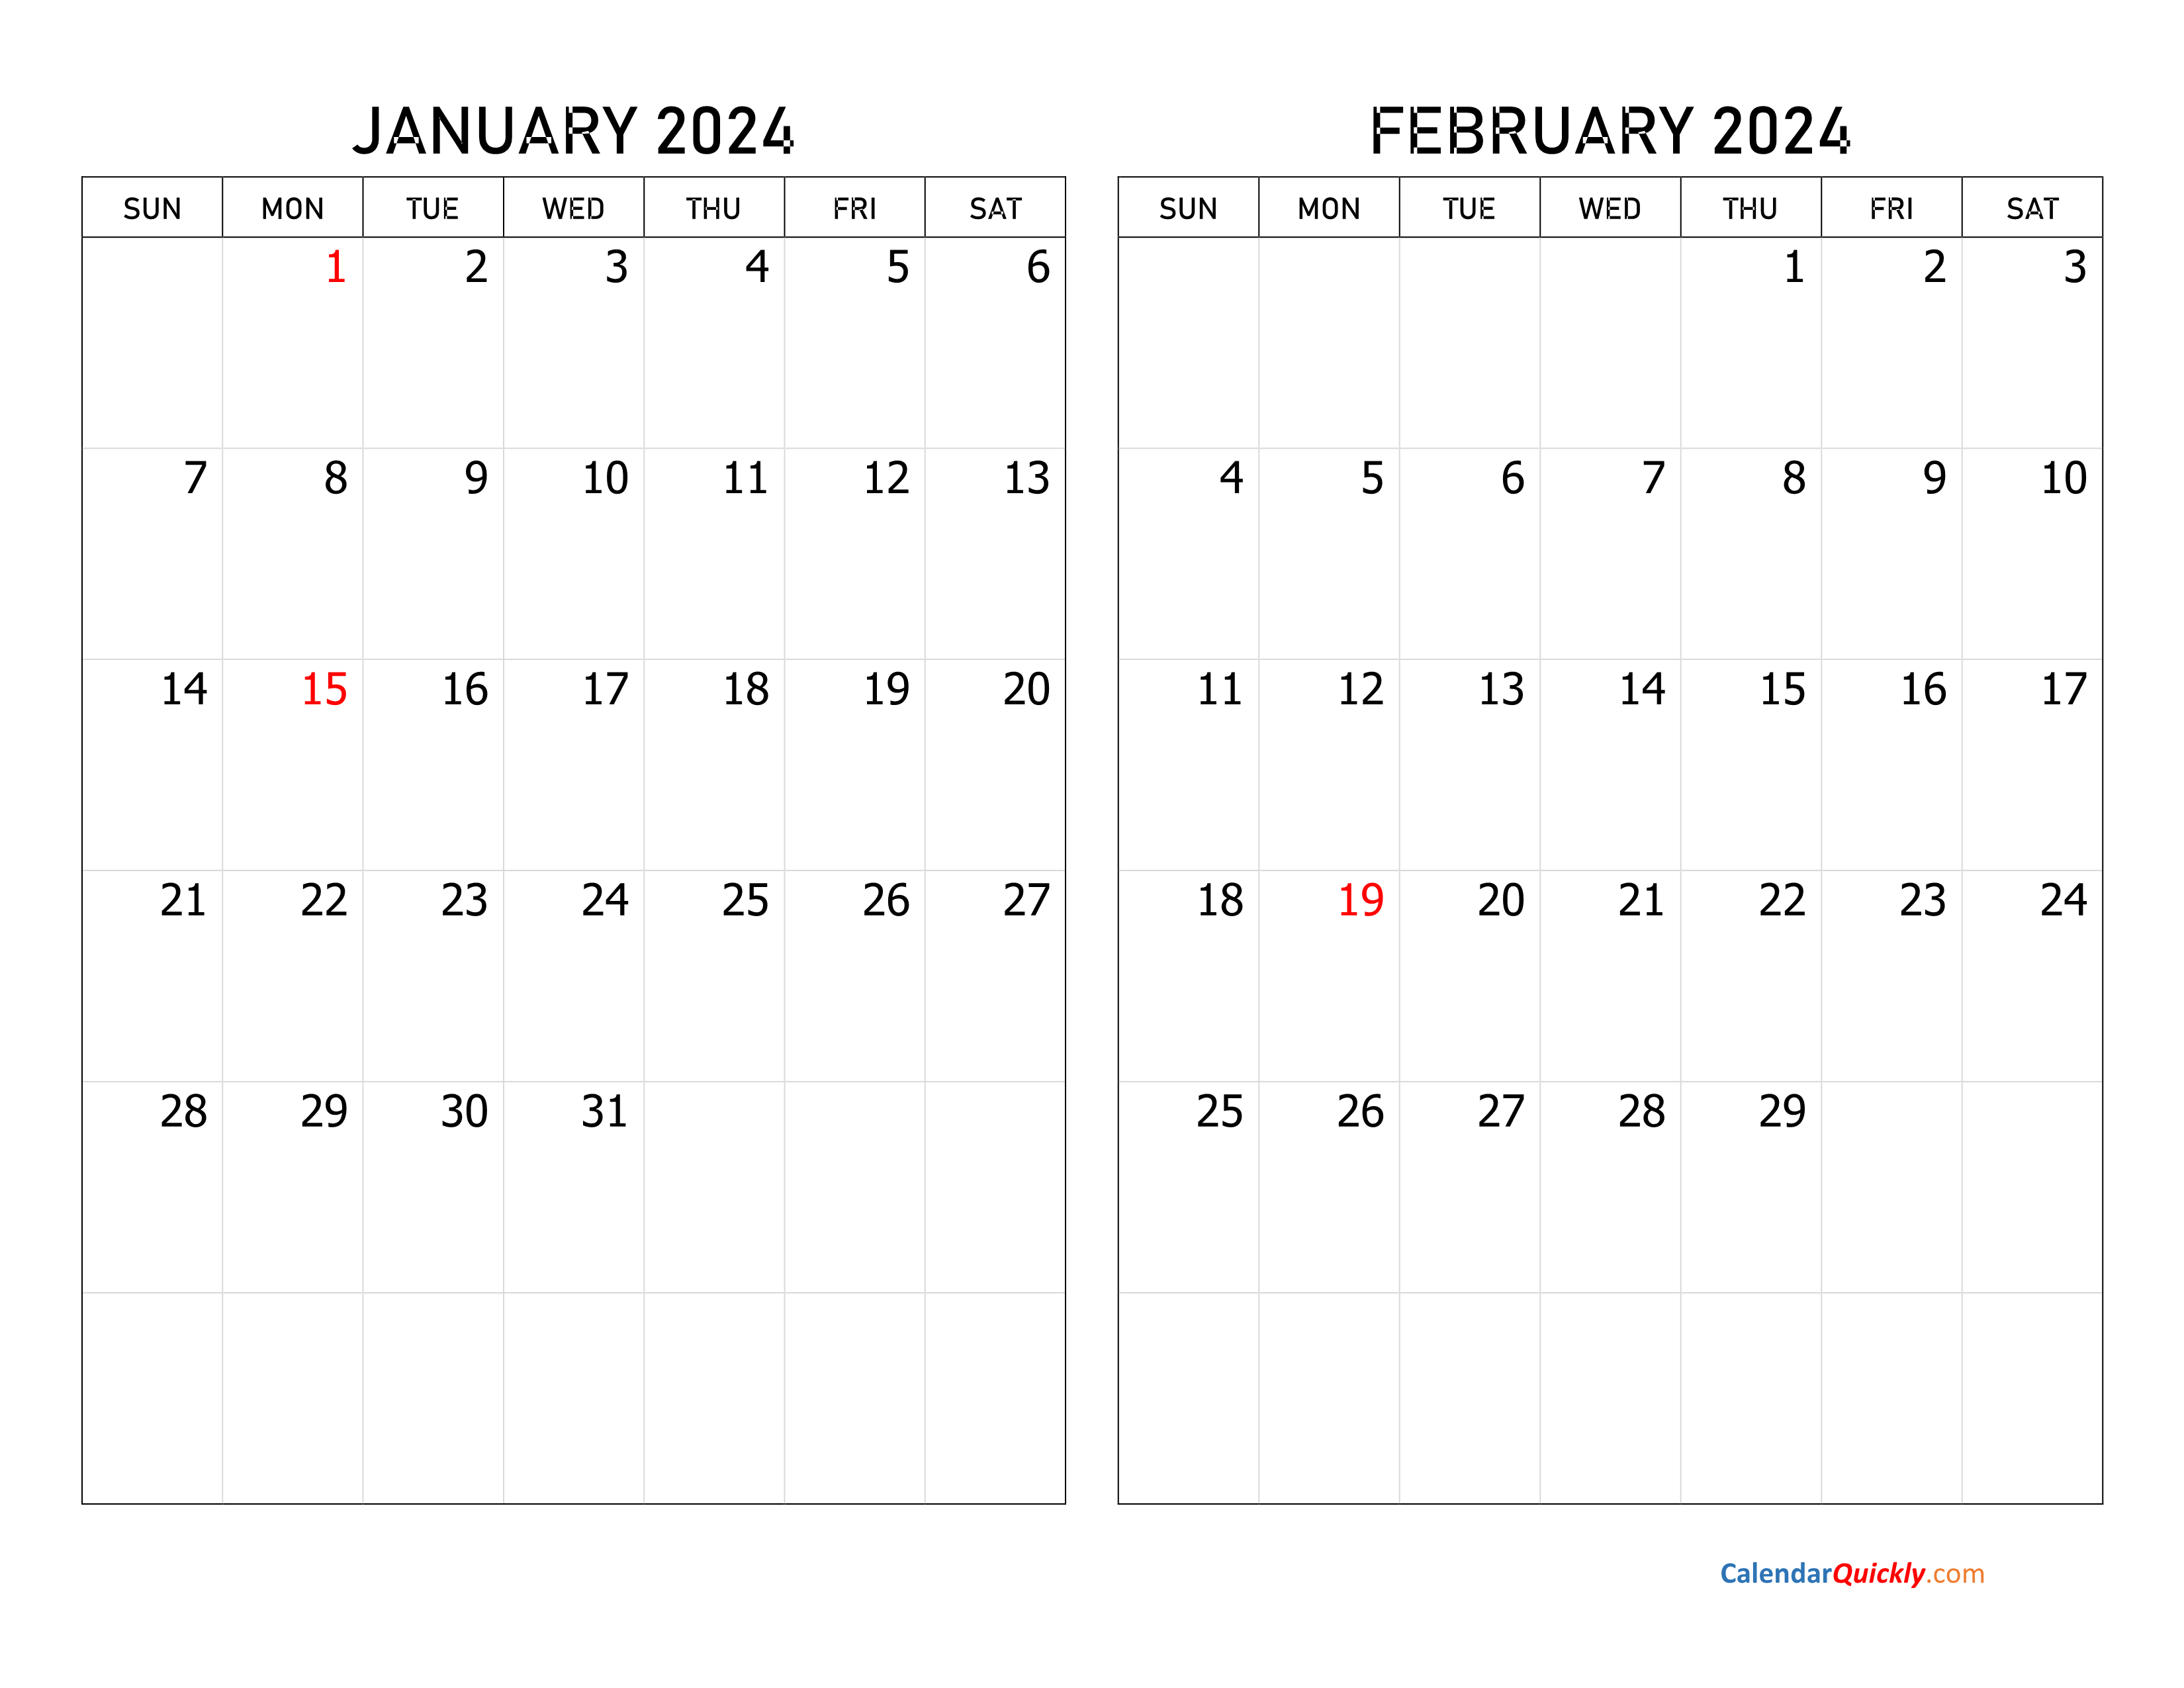 January and February 2024 Calendar Calendar Quickly